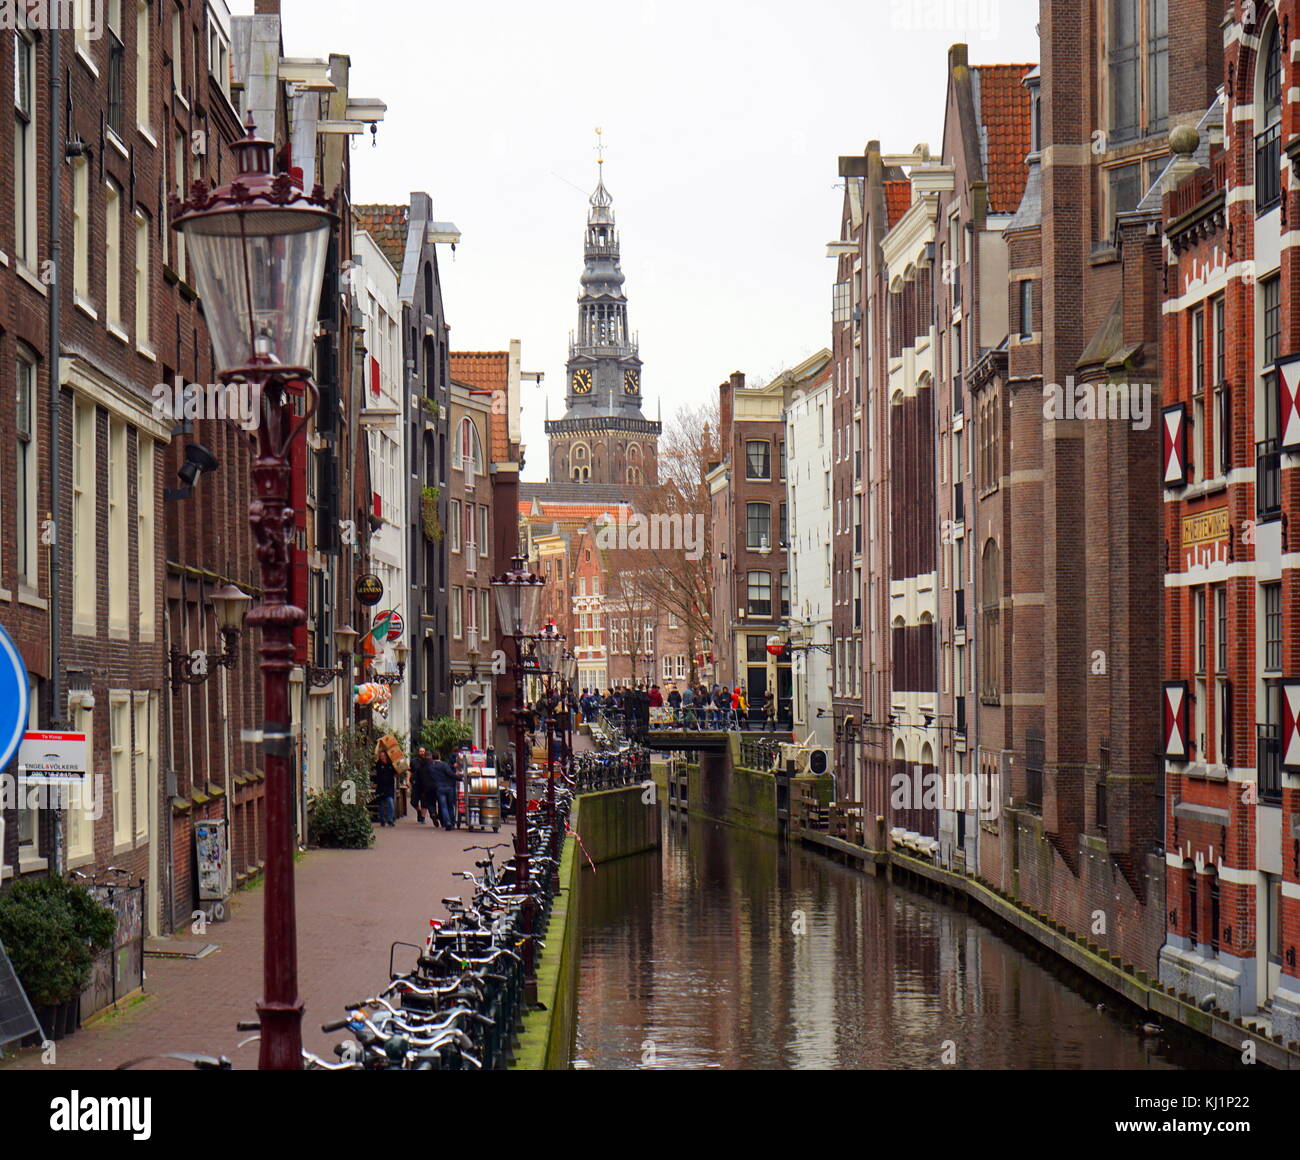 Oudezijds Kolk canal, dans le centre d'Amsterdam, dans le quartier de De Wallen. Construit au xve siècle, il a servi de canal de drainage. 2017 Banque D'Images